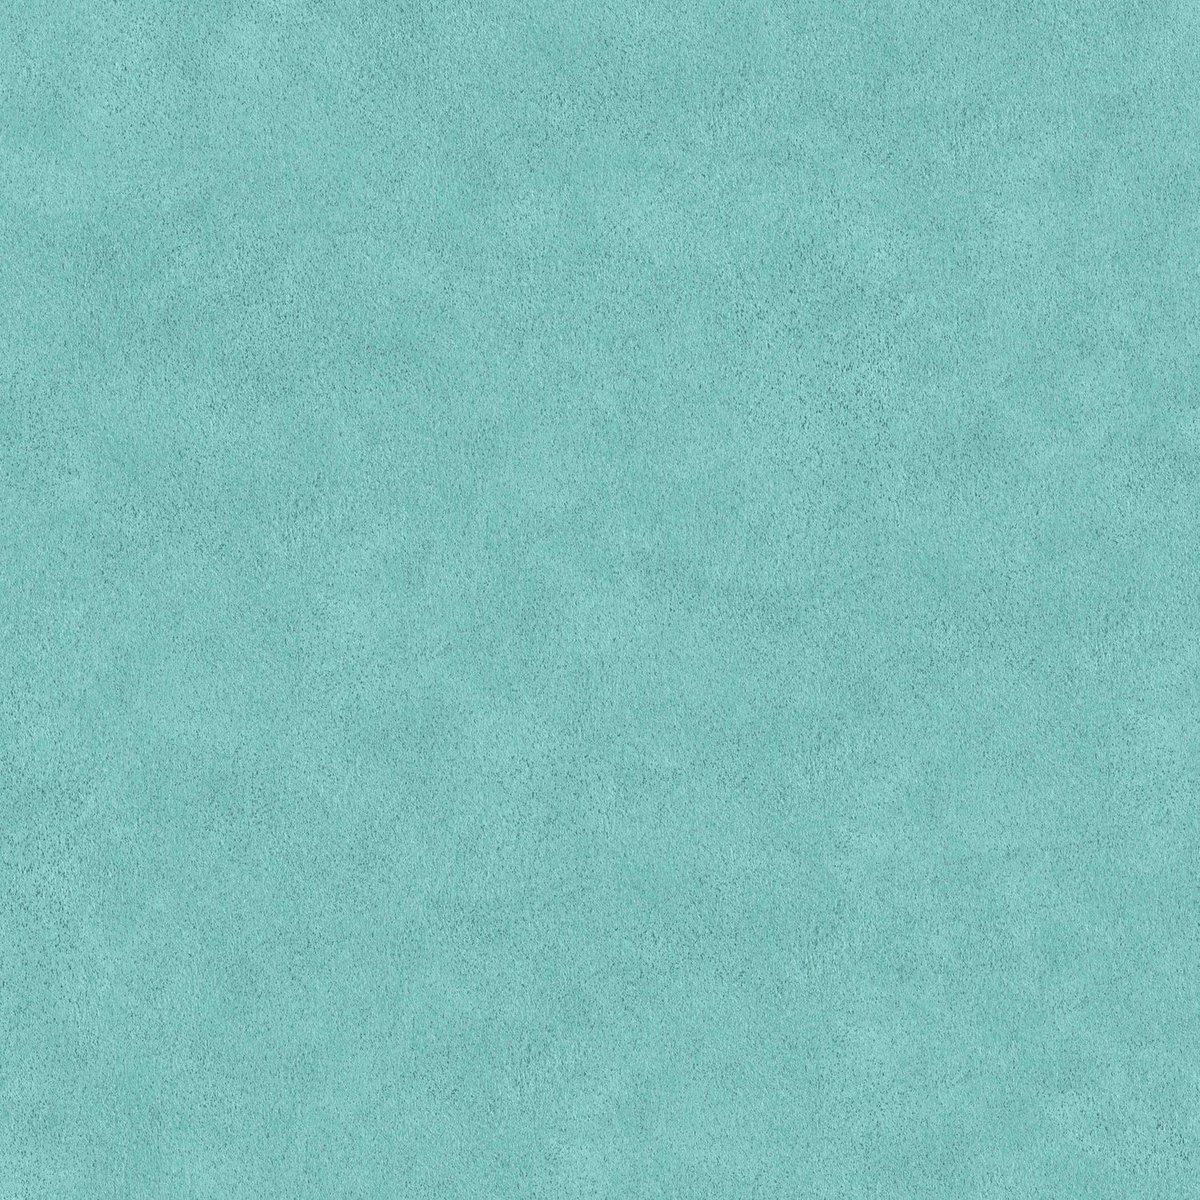 Ton sur ton behang Profhome 362069-GU vliesbehang glad tun sur ton mat blauw 5,33 m2